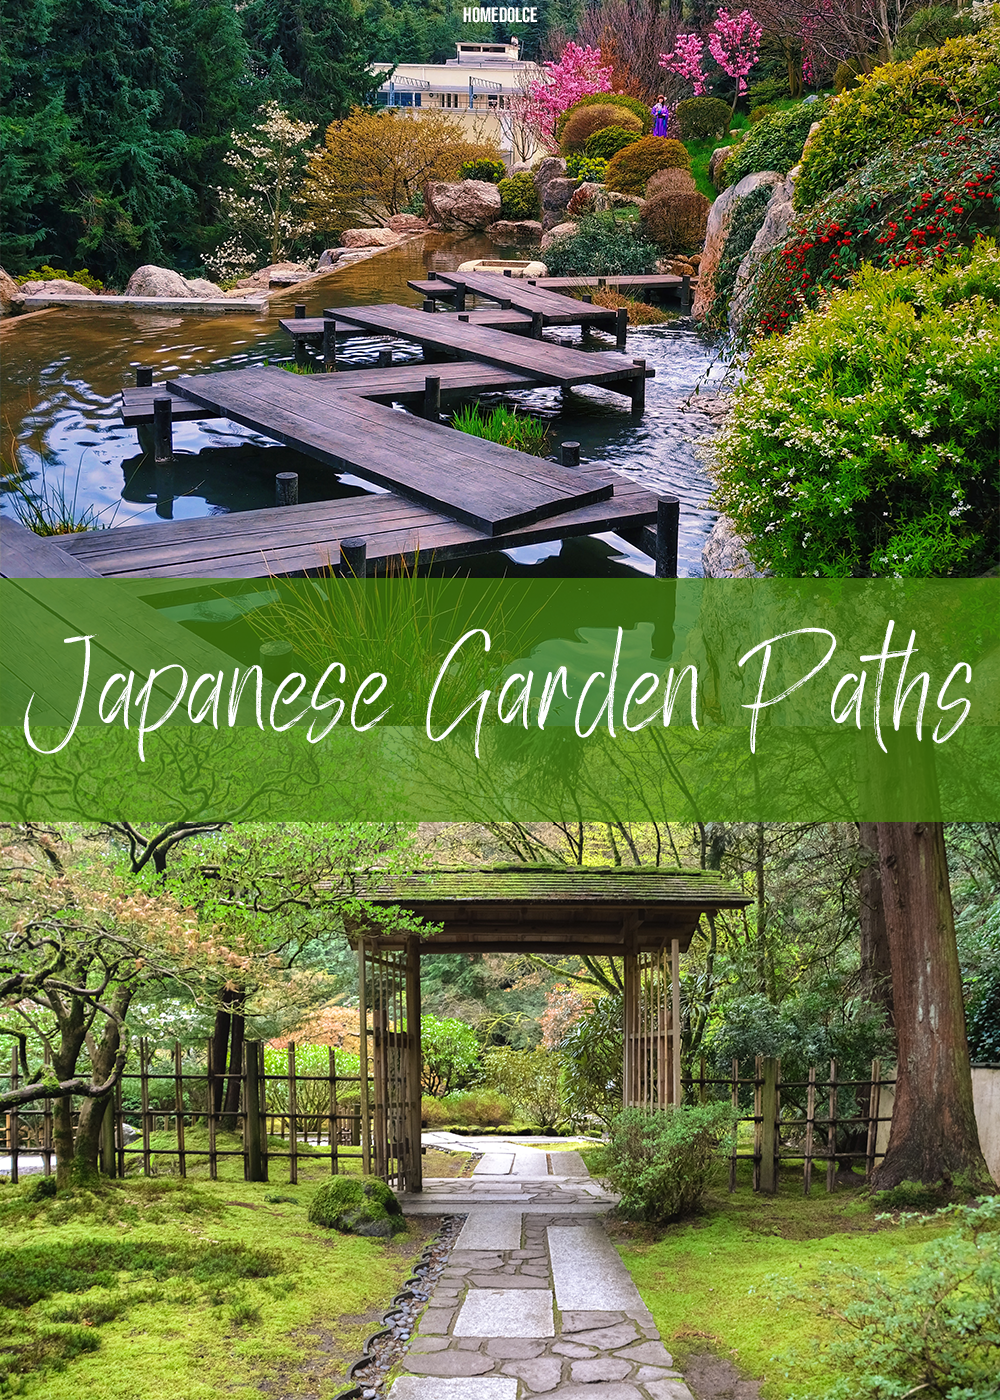 Japanese-garden-paths